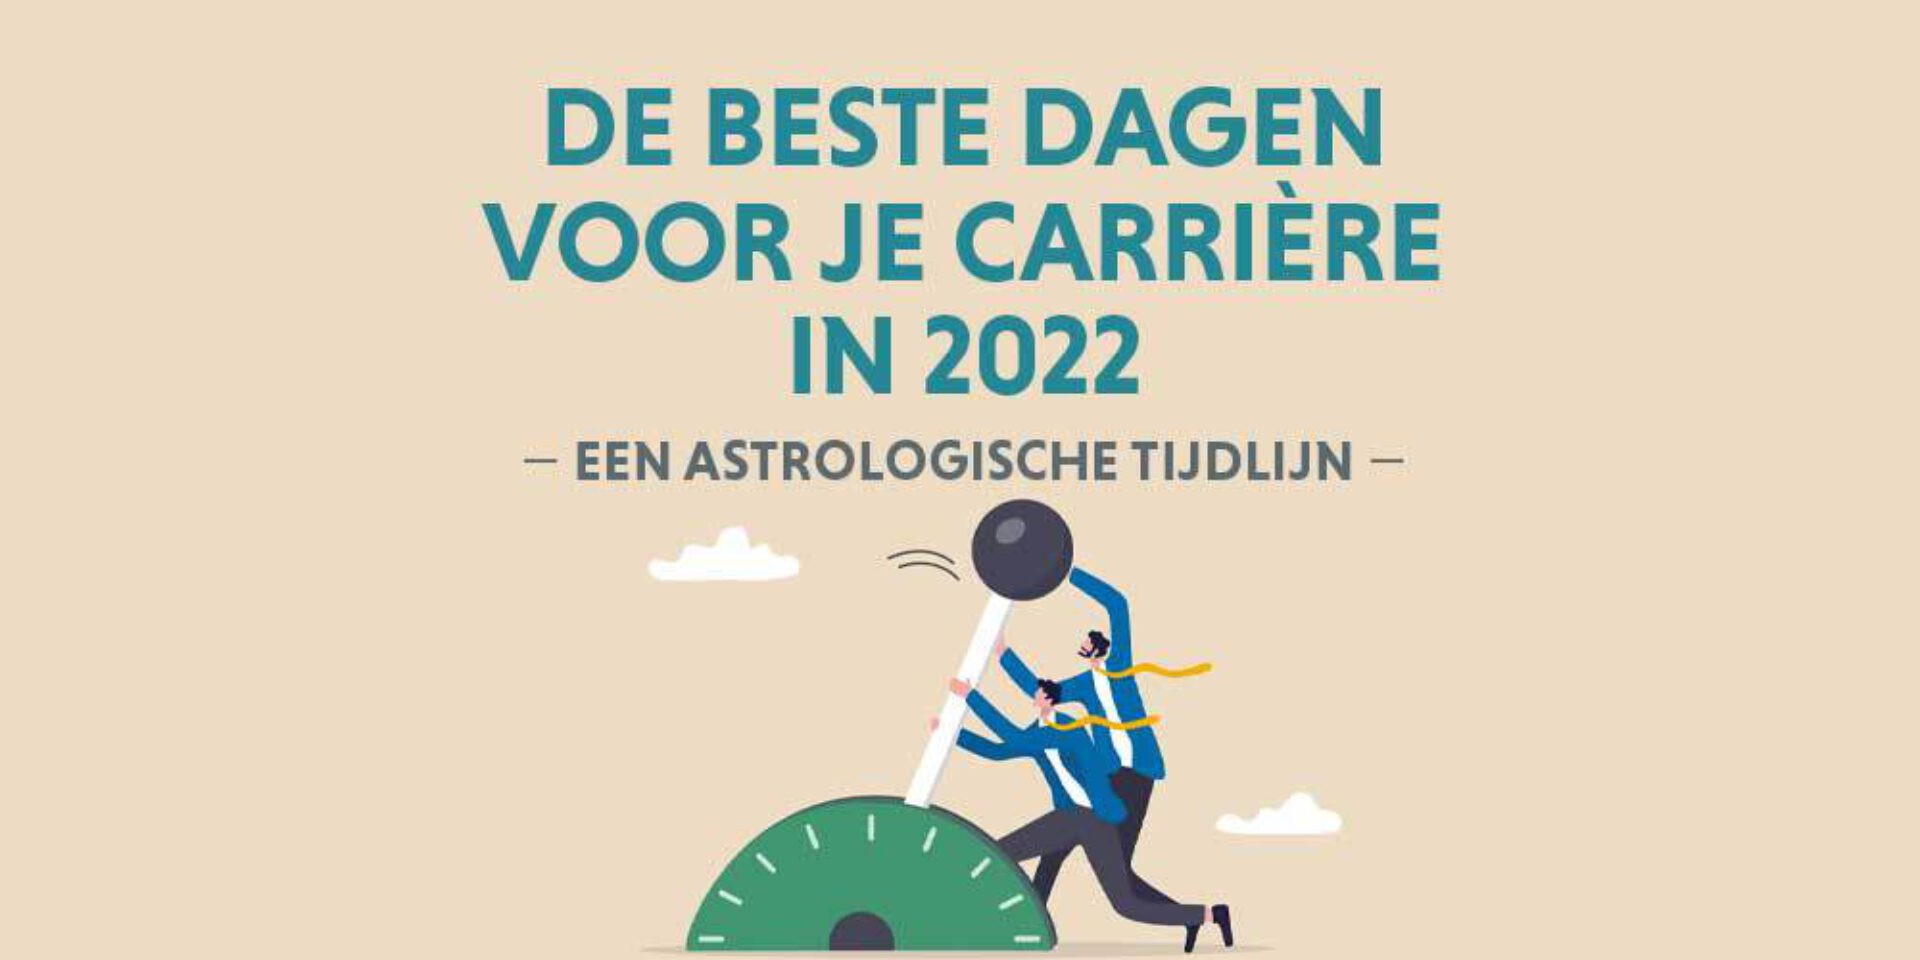 De beste dagen voor je carrière in 2022: een astrologische tijdlijn